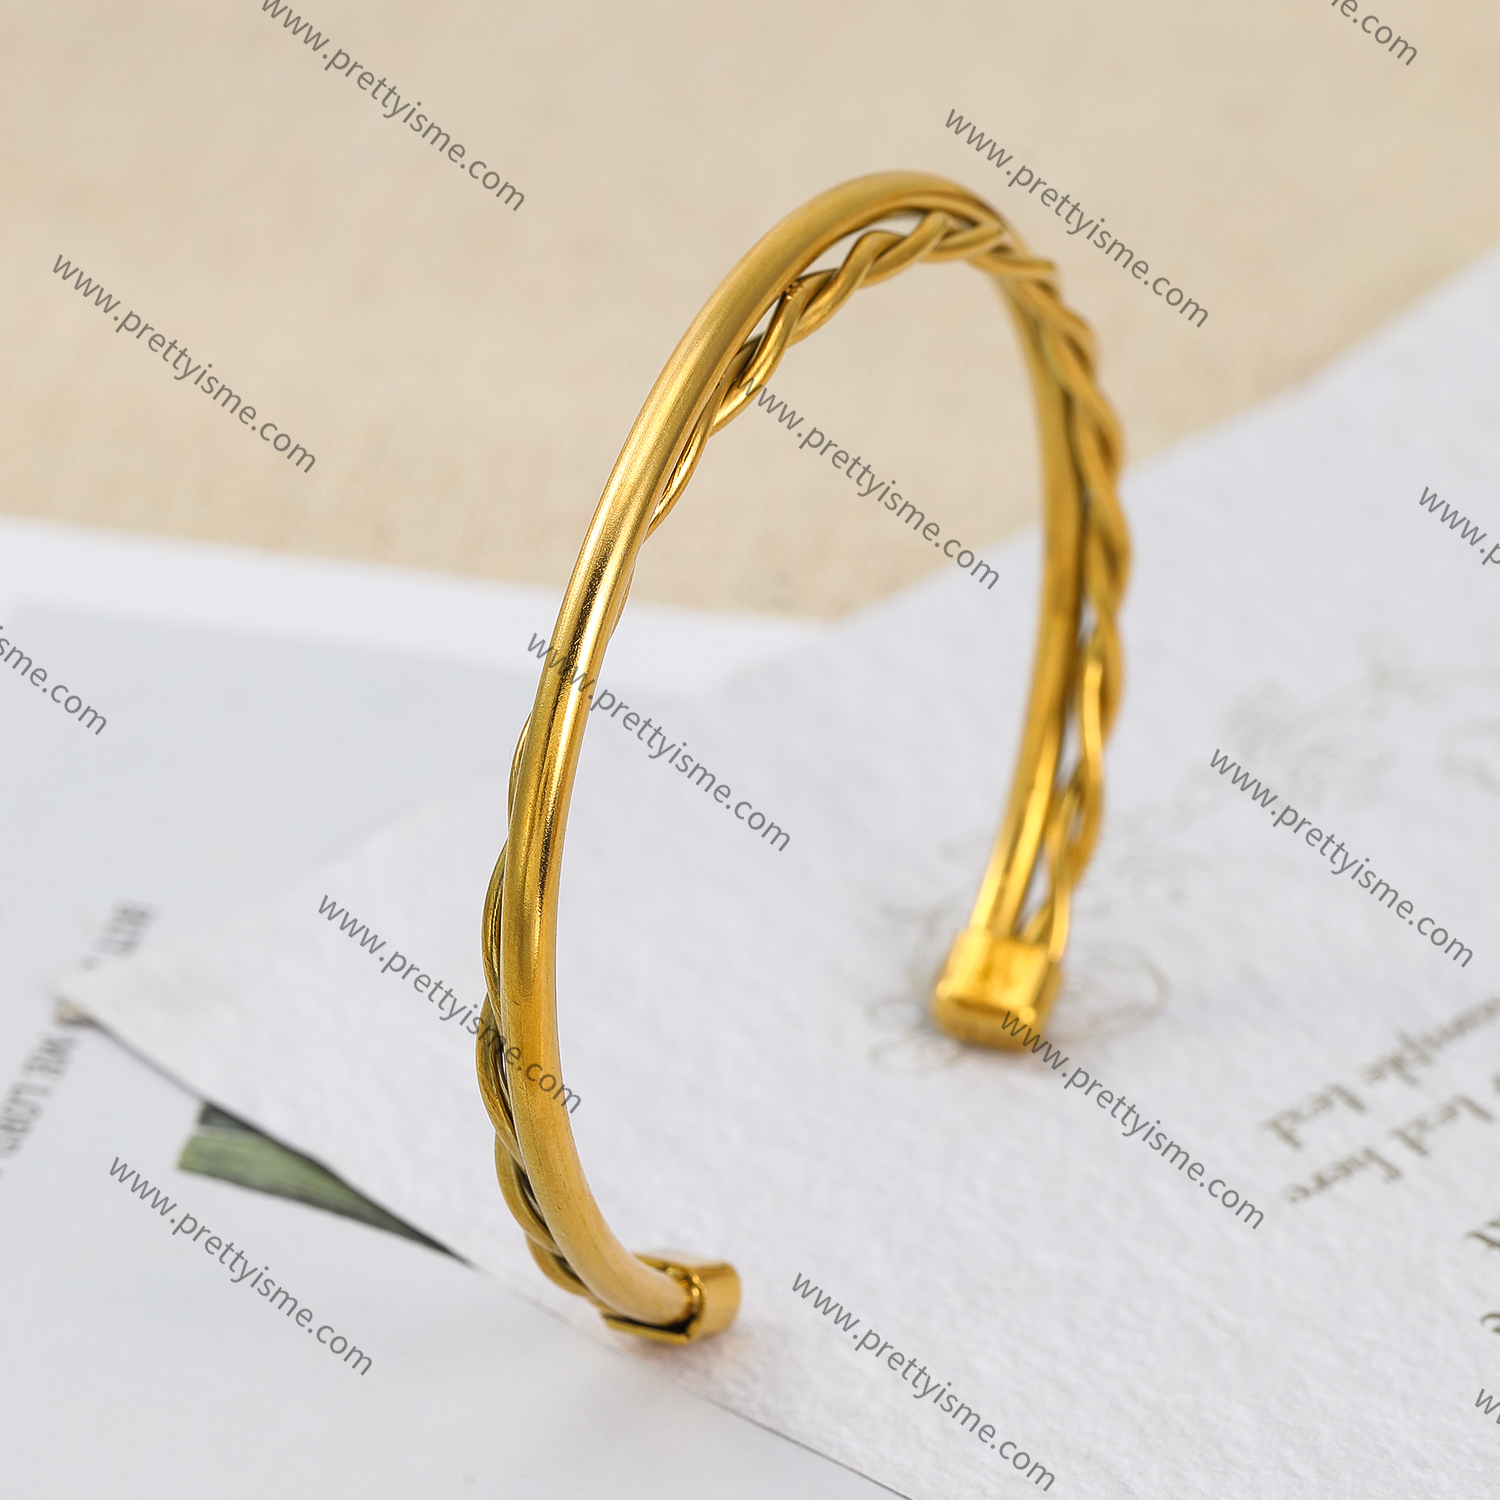 Interwoven Smooth Gold Stainless Steel Bracelet Waterproof Elegant Simple Bracelet (3).webp